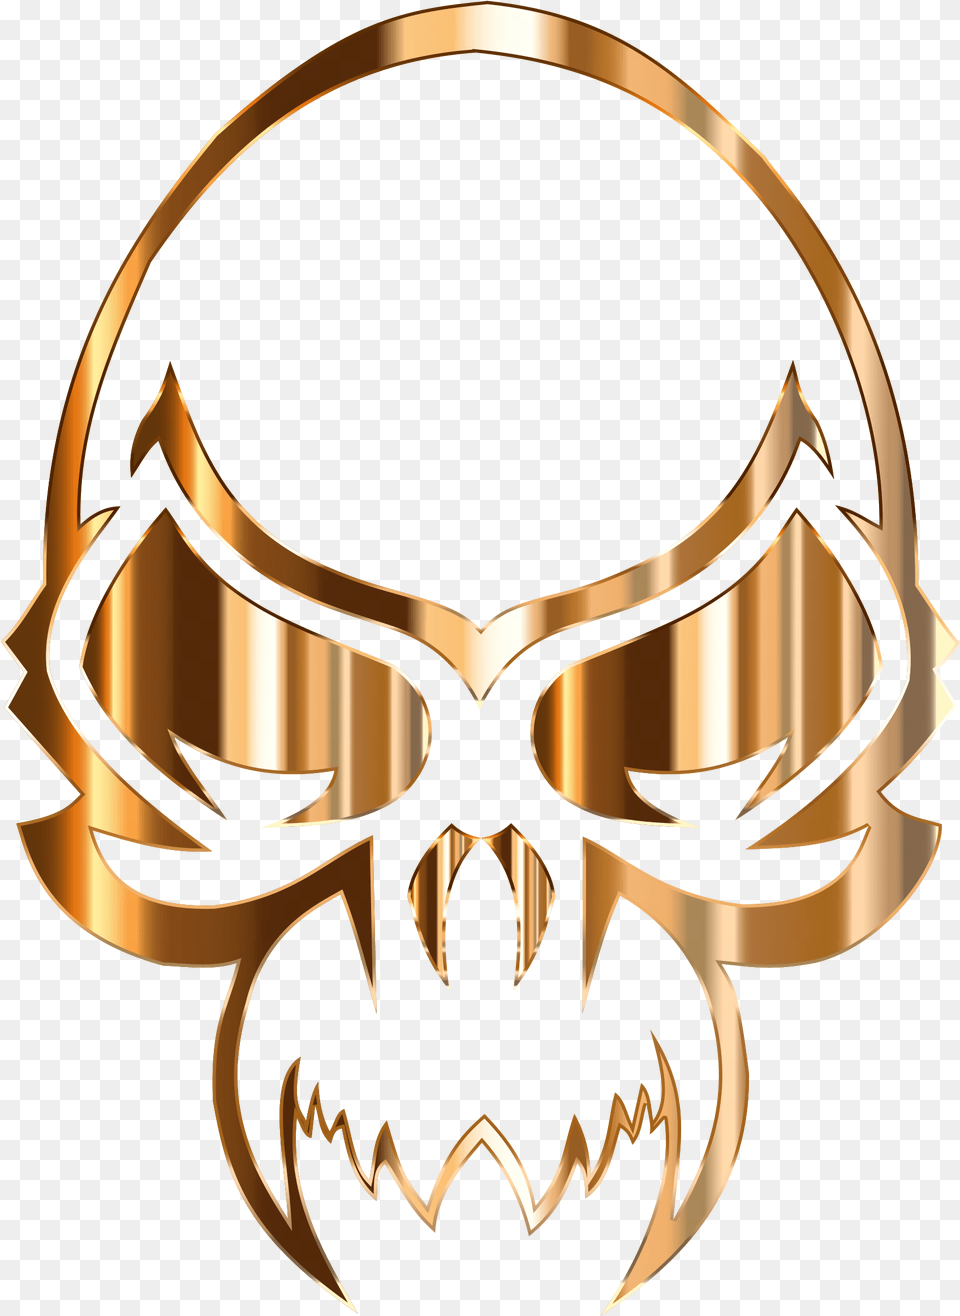 Big Image Gold Skull Transparent Logo, Emblem, Symbol, Bow, Weapon Free Png